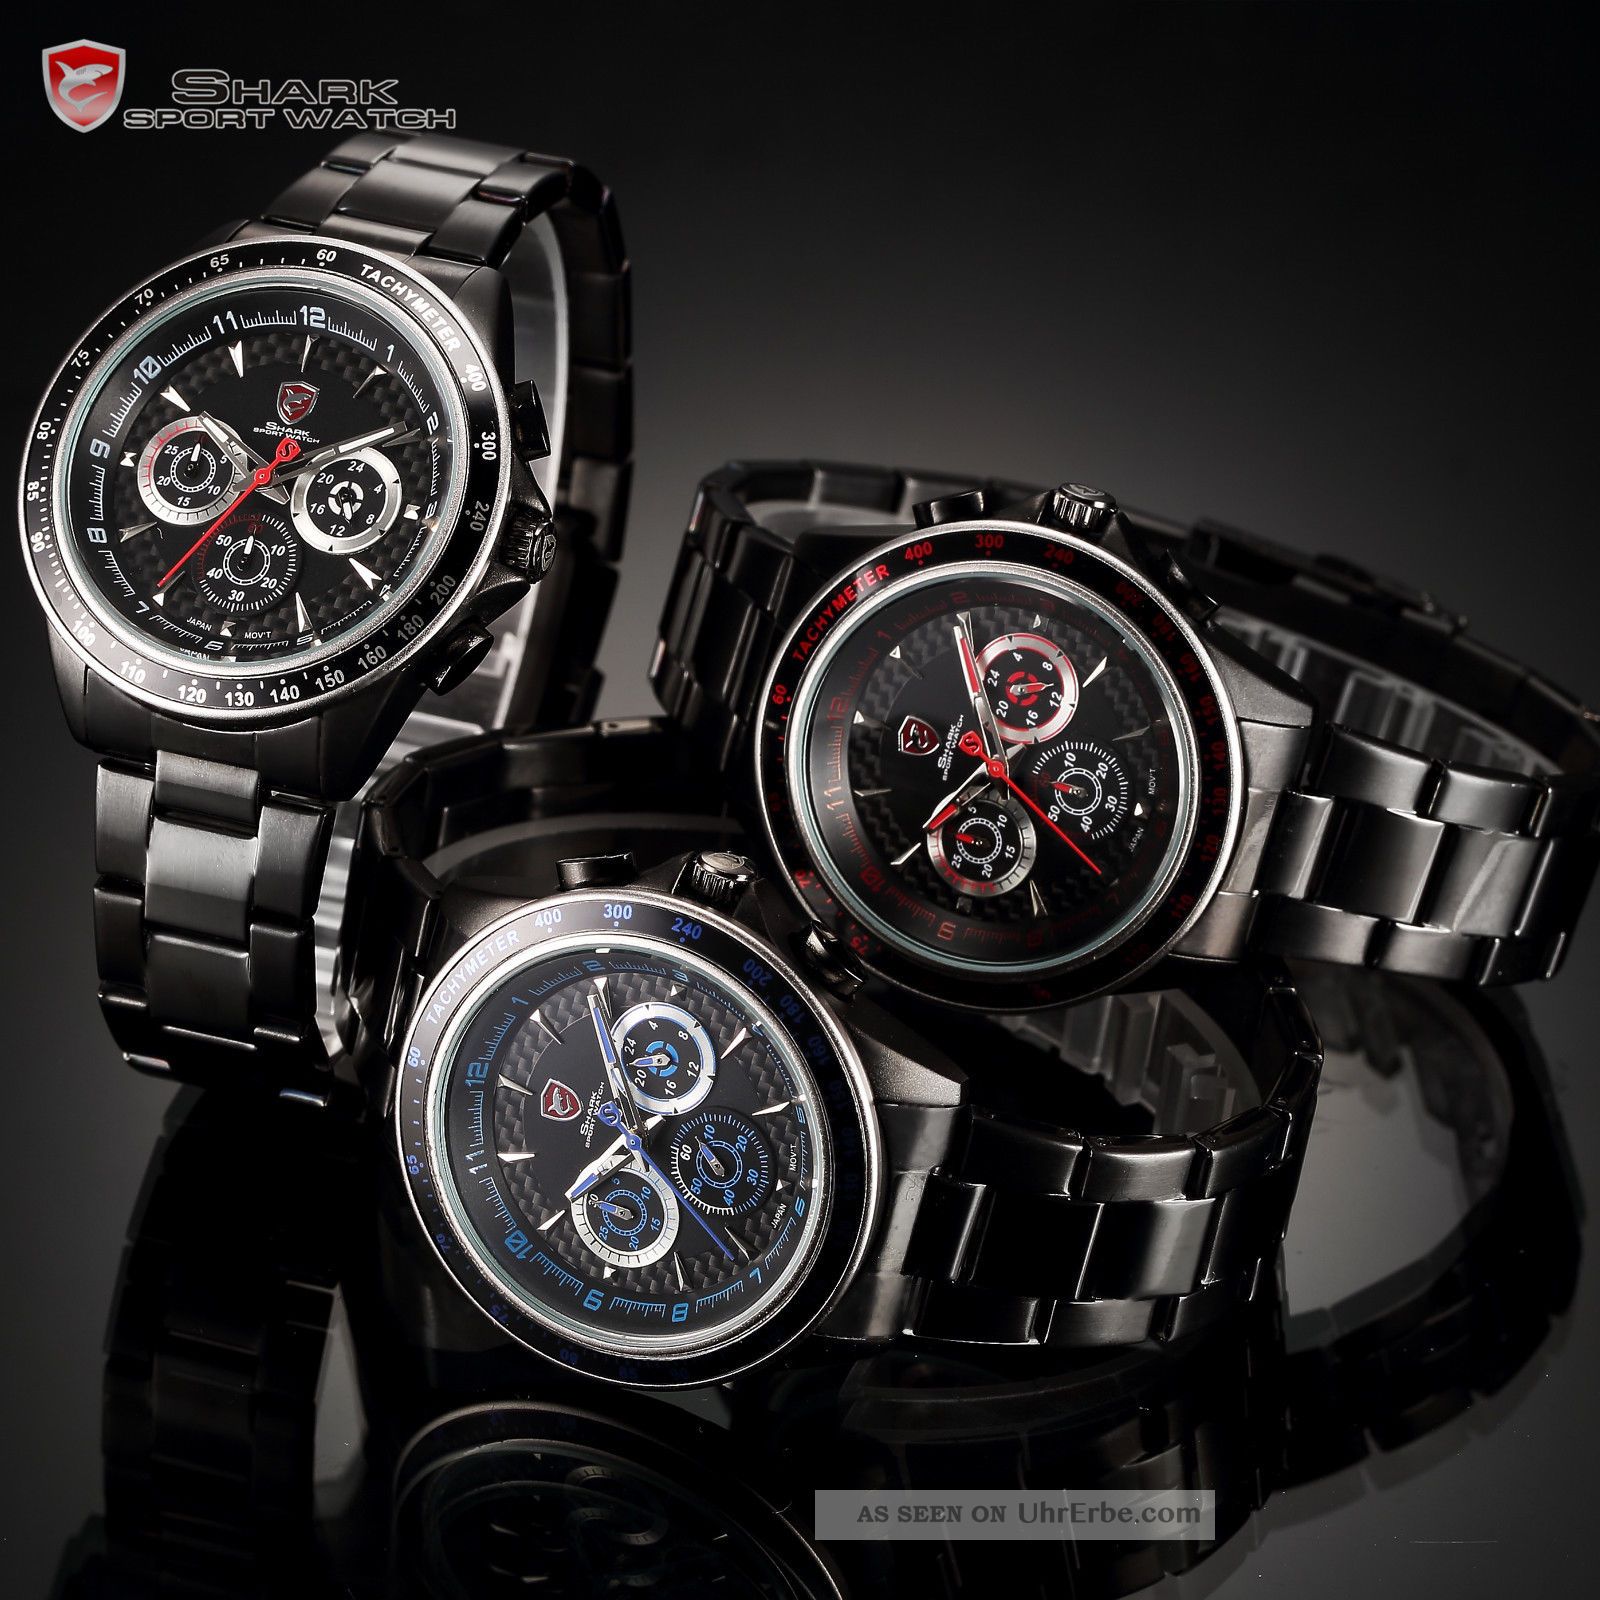 D Shark Herren Quarzuhr Analog Edelstahlband Armbanduhr 6 Modelle Armbanduhren Bild